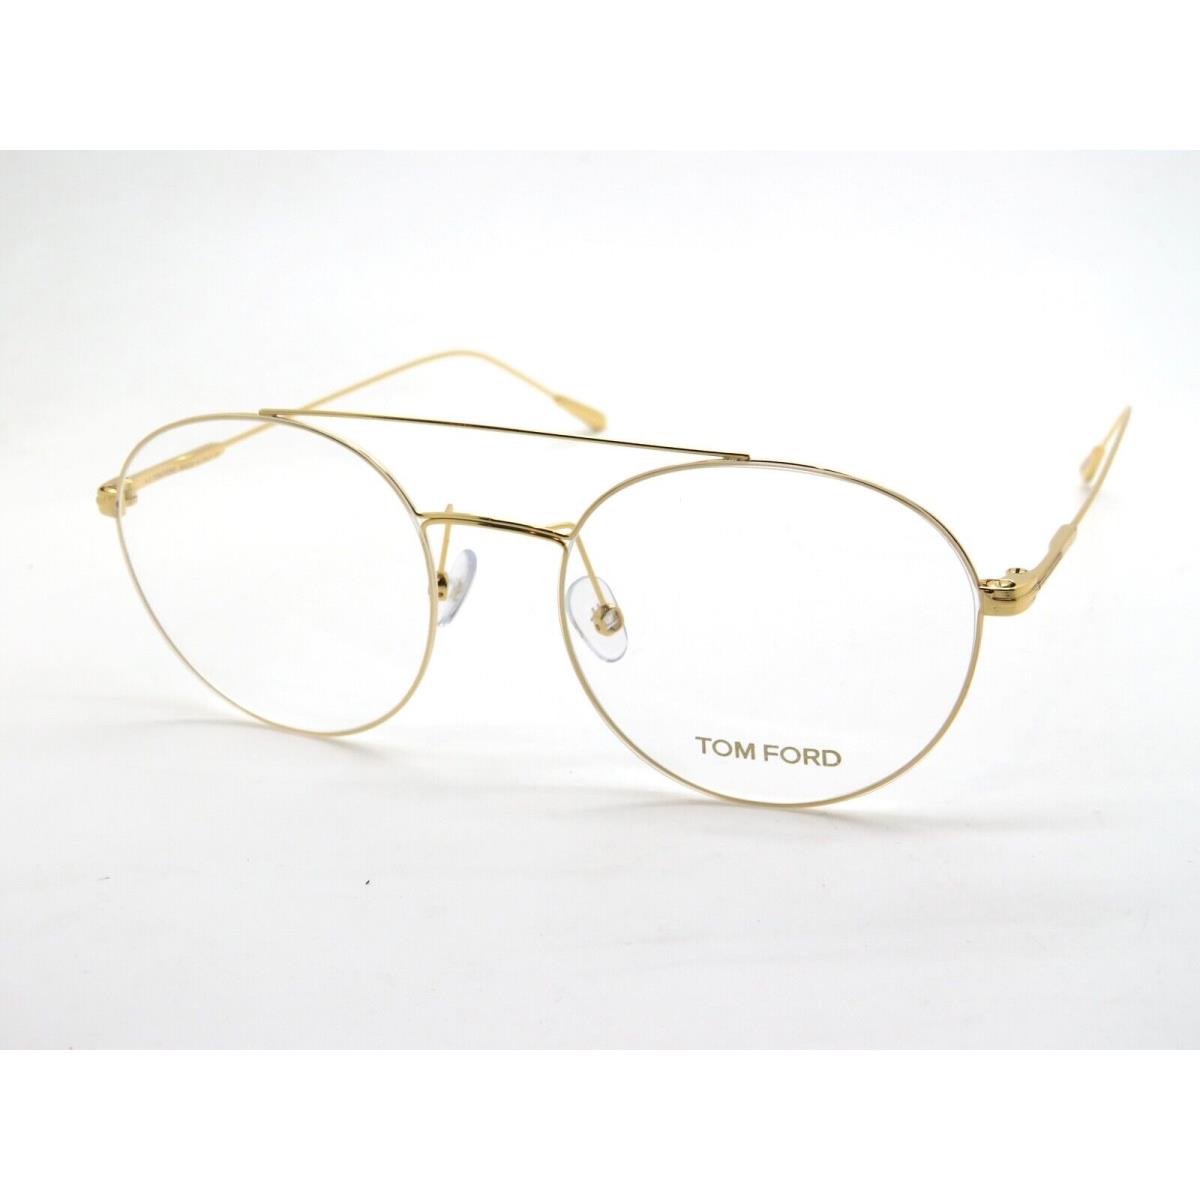 Tom Ford FT 5603/V 030 Gold 52mm Rx Eyeglasses